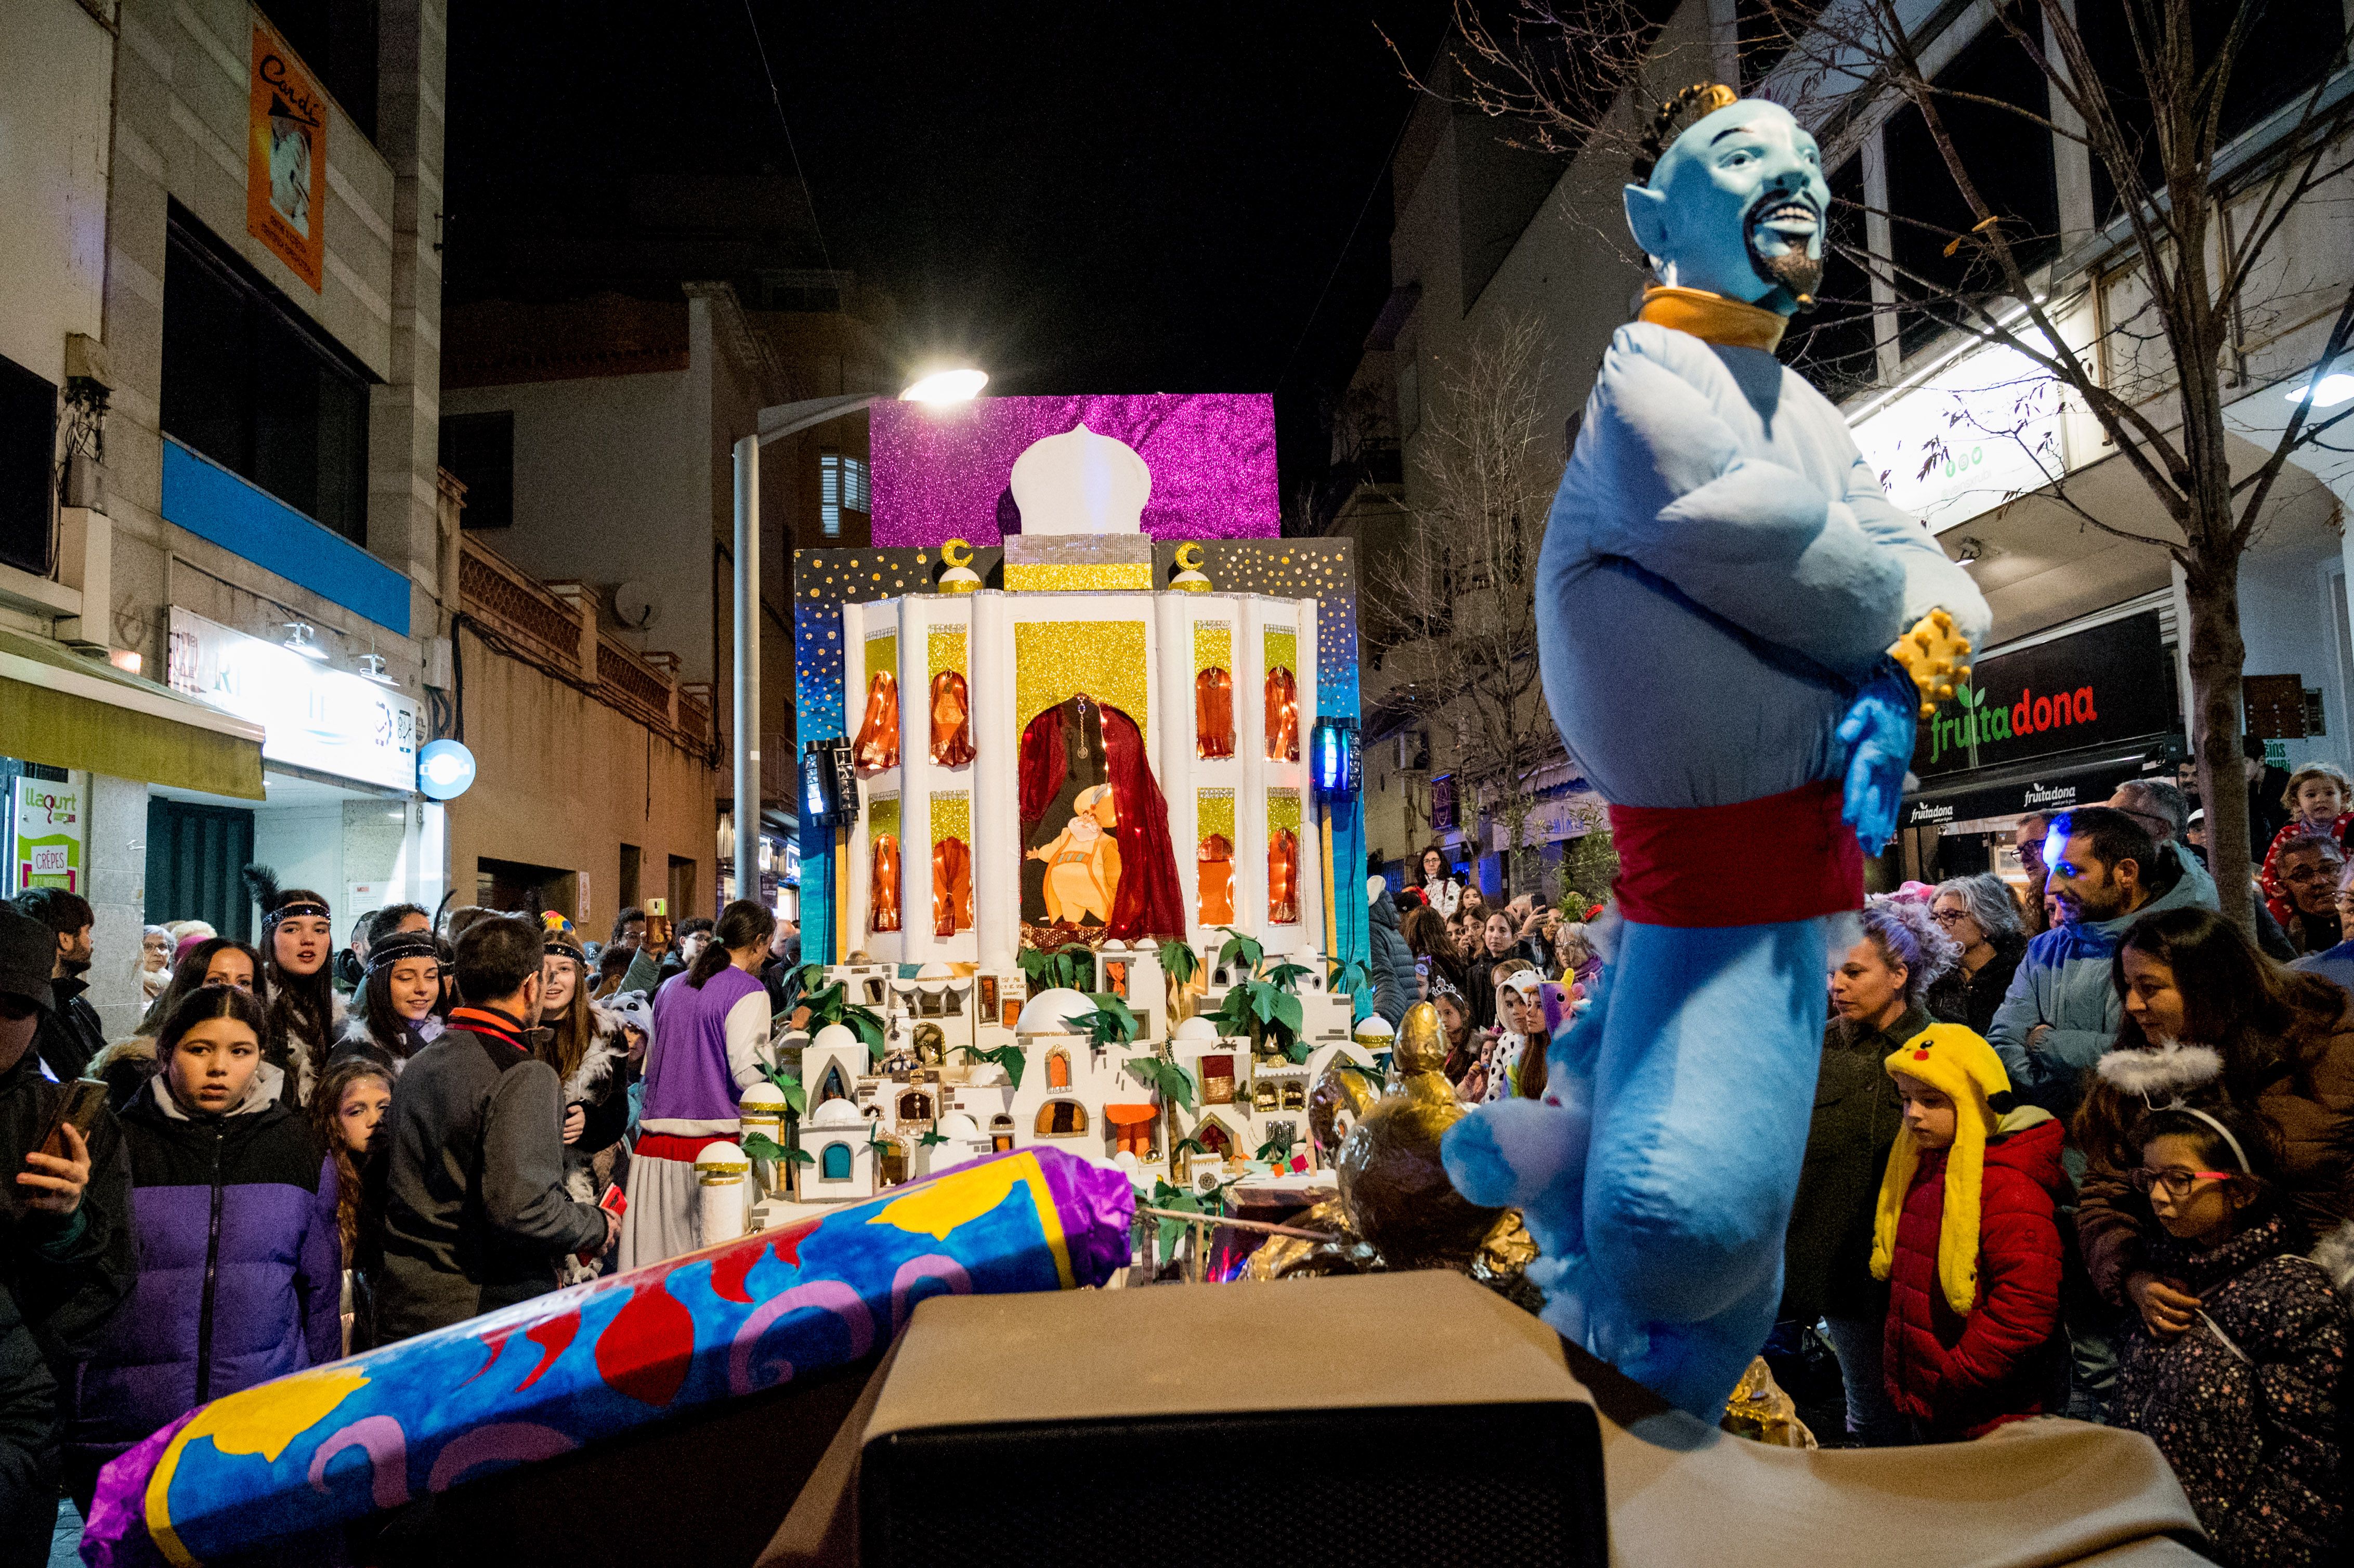 La rua ha portat la música més actual amb balls de tota mena. Foto: Carmelo Jiménez